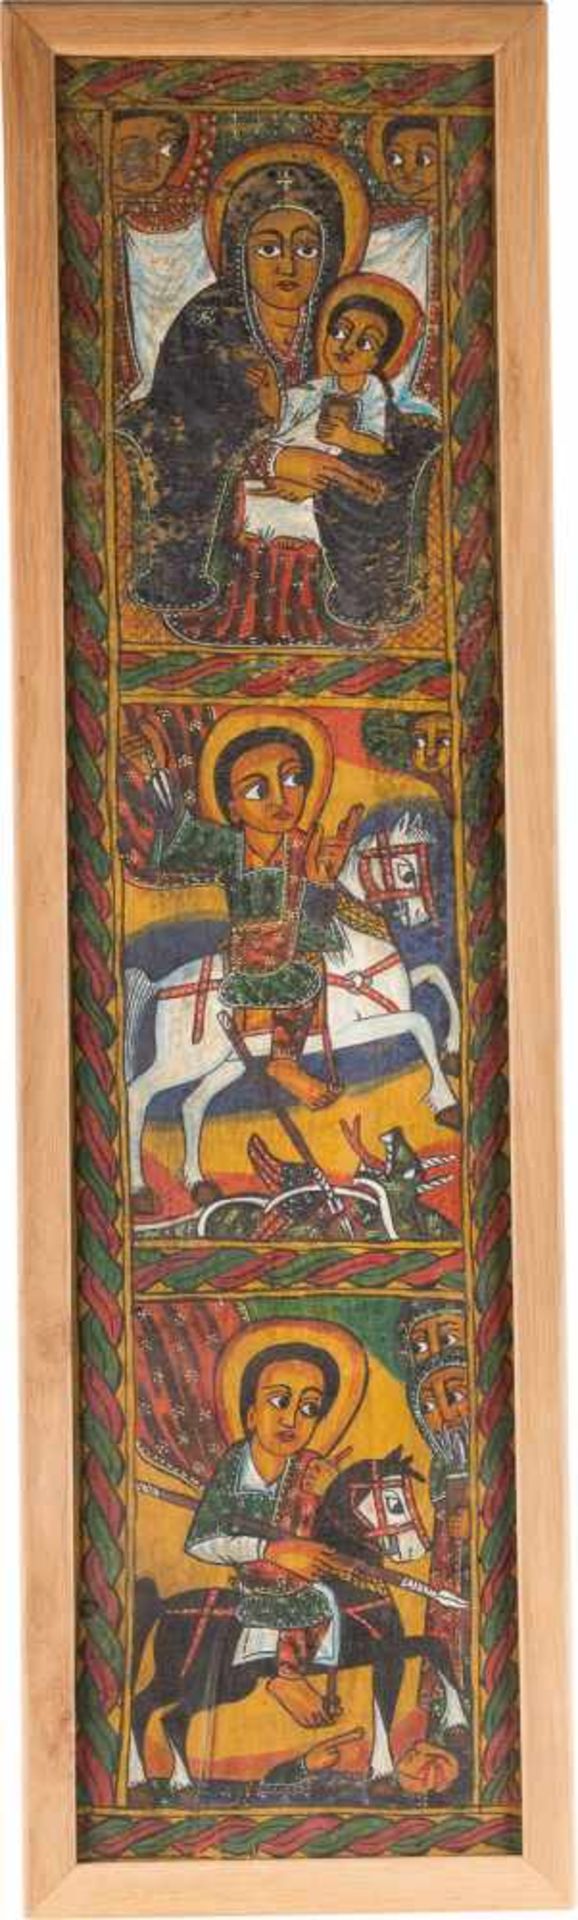 GROSSE KOPTISCHE MALEREI MIT DER GOTTESMUTTER UND HEILIGEN Äthiopien, 20. Jh. Polychrome Malerei auf